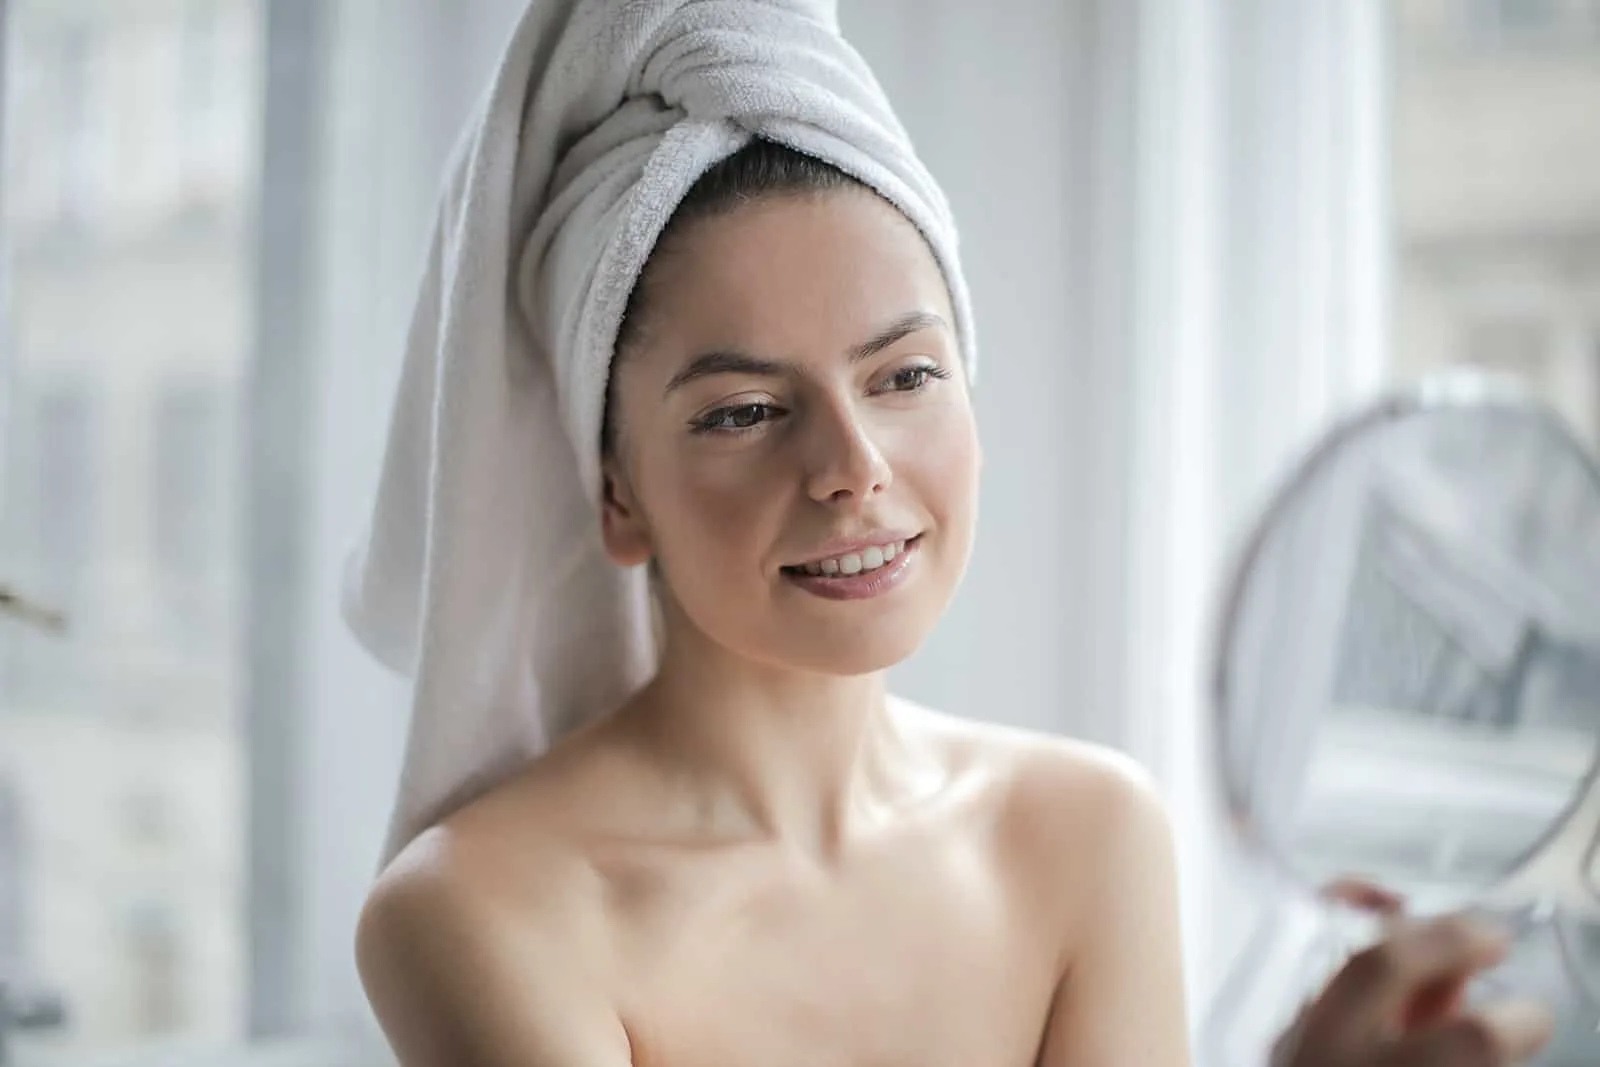 eine Frau mit einem Handtuch auf dem Kopf, die einen Spiegel hält und sich selbst ansieht